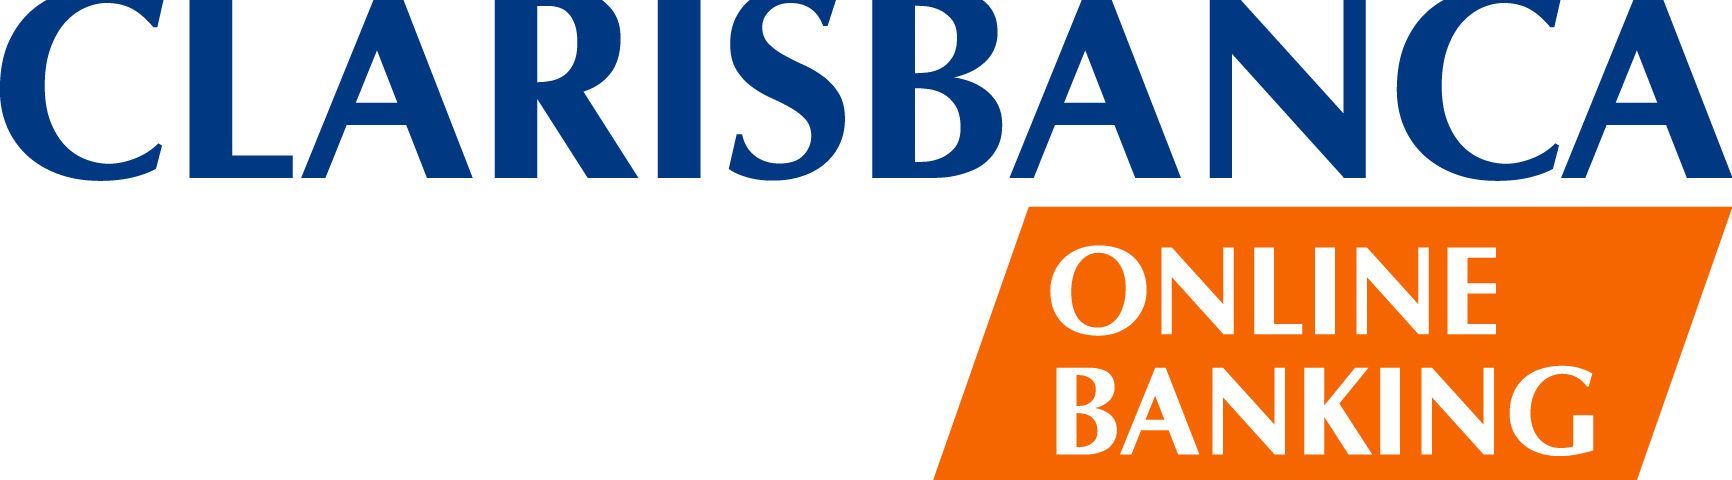 Clarisbanca Online Banking: che servizi offriva ...